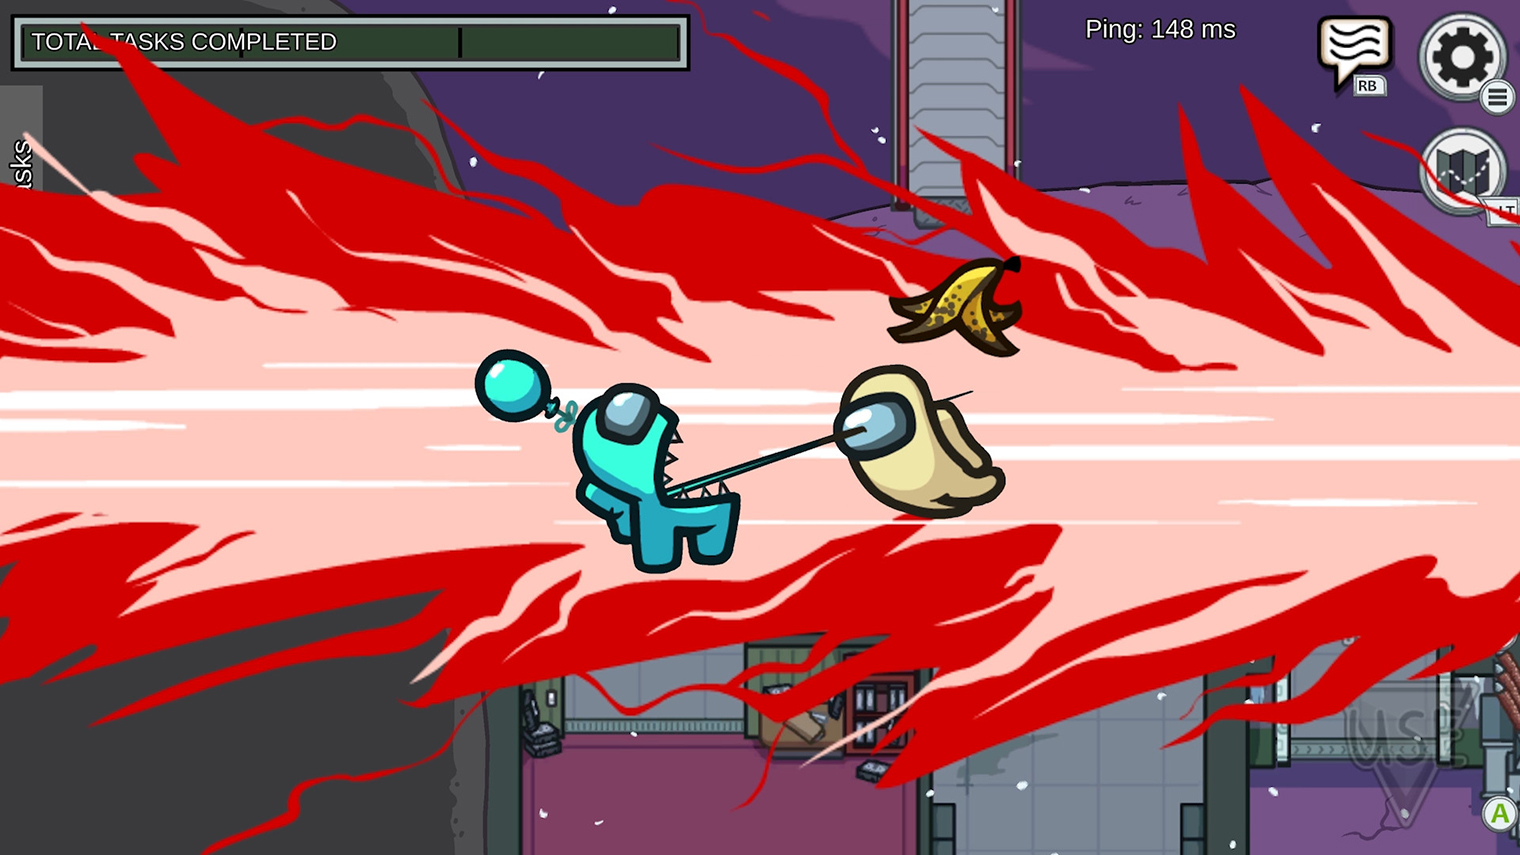 Анимация с убийством. Скриншот из игры